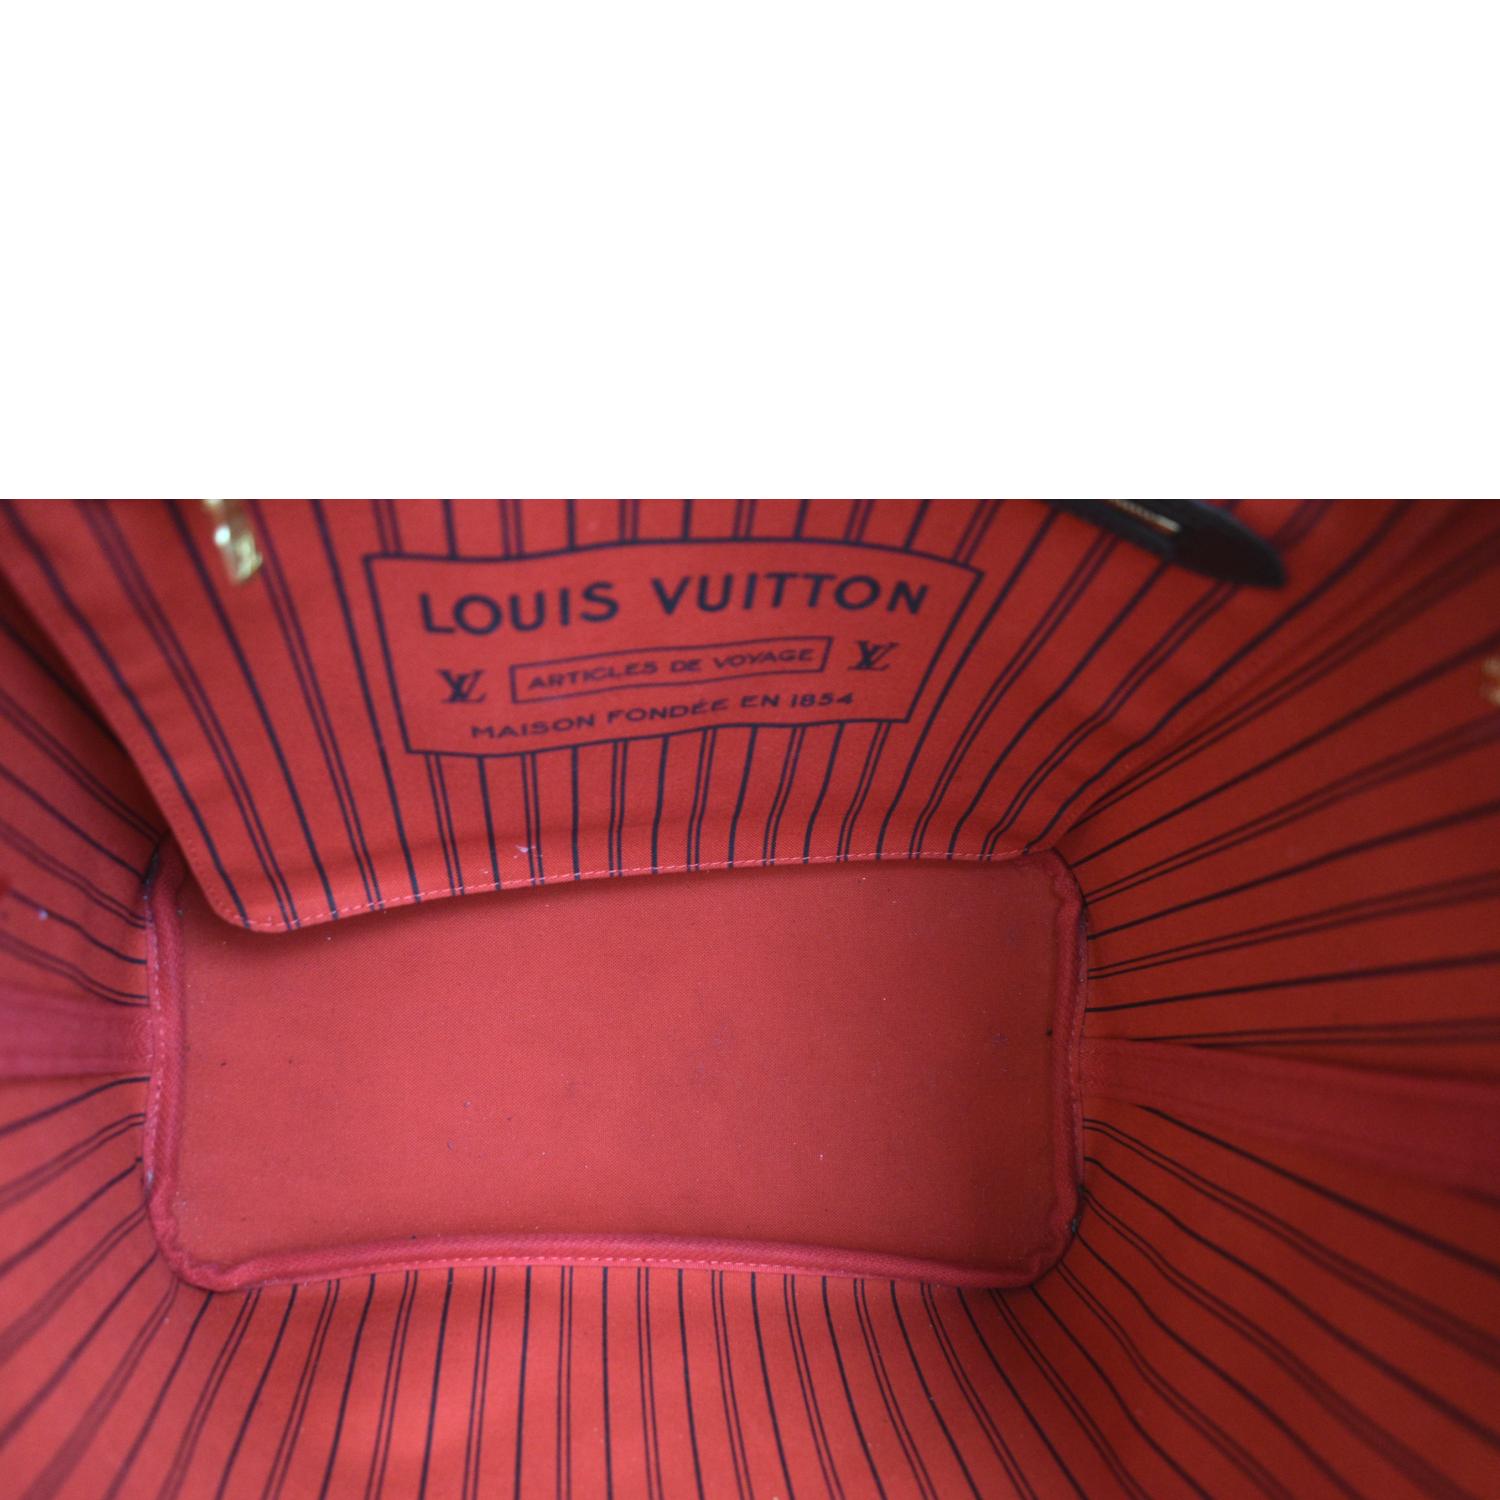 Louis Vuitton Articles DE Voyage Maison Fondee EN 1854 for Sale in